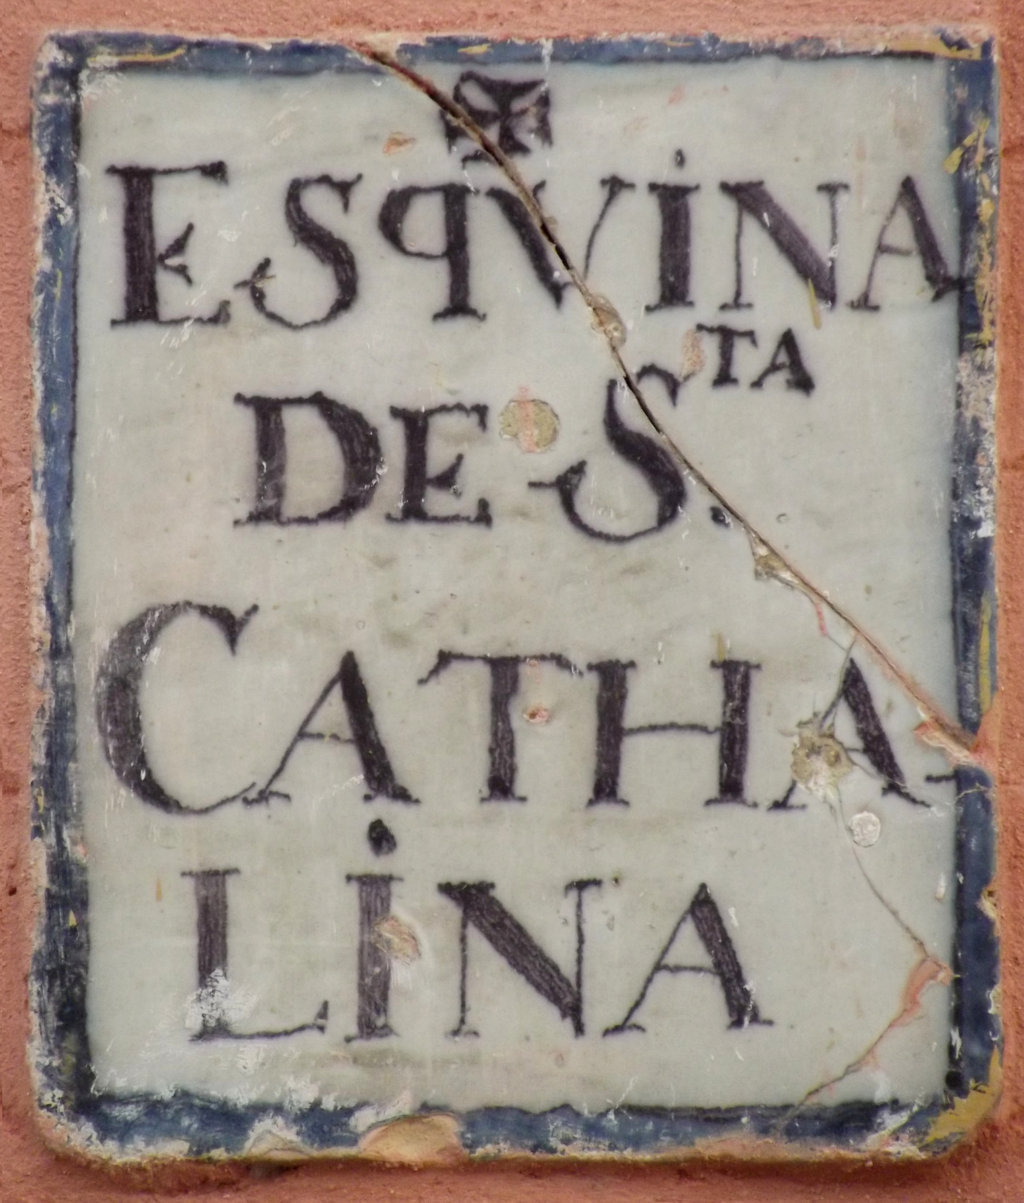 00723. Placa de Olavide. Enclave. Esquina de Santa Catalina. Fachada de la parroquia de Santa Catalina. Sevilla.